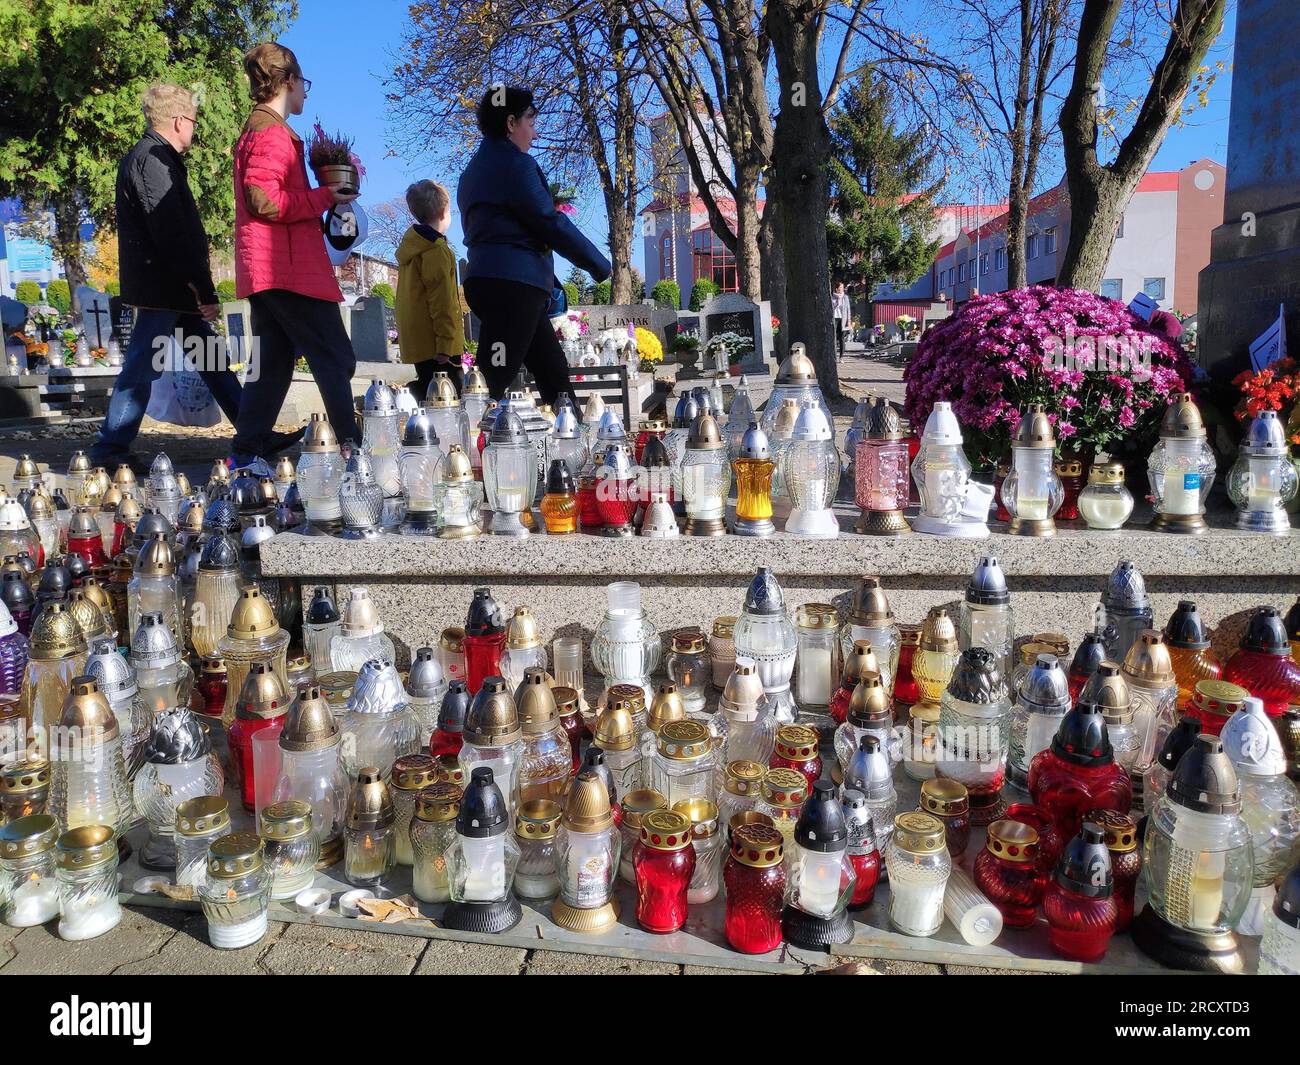 BYTOM, POLEN - 1. NOVEMBER 2021: Menschen besuchen die Gräber auf einem Friedhof am Allerheiligen-Tag (Wszystkich Swietych) in Polen. Stockfoto